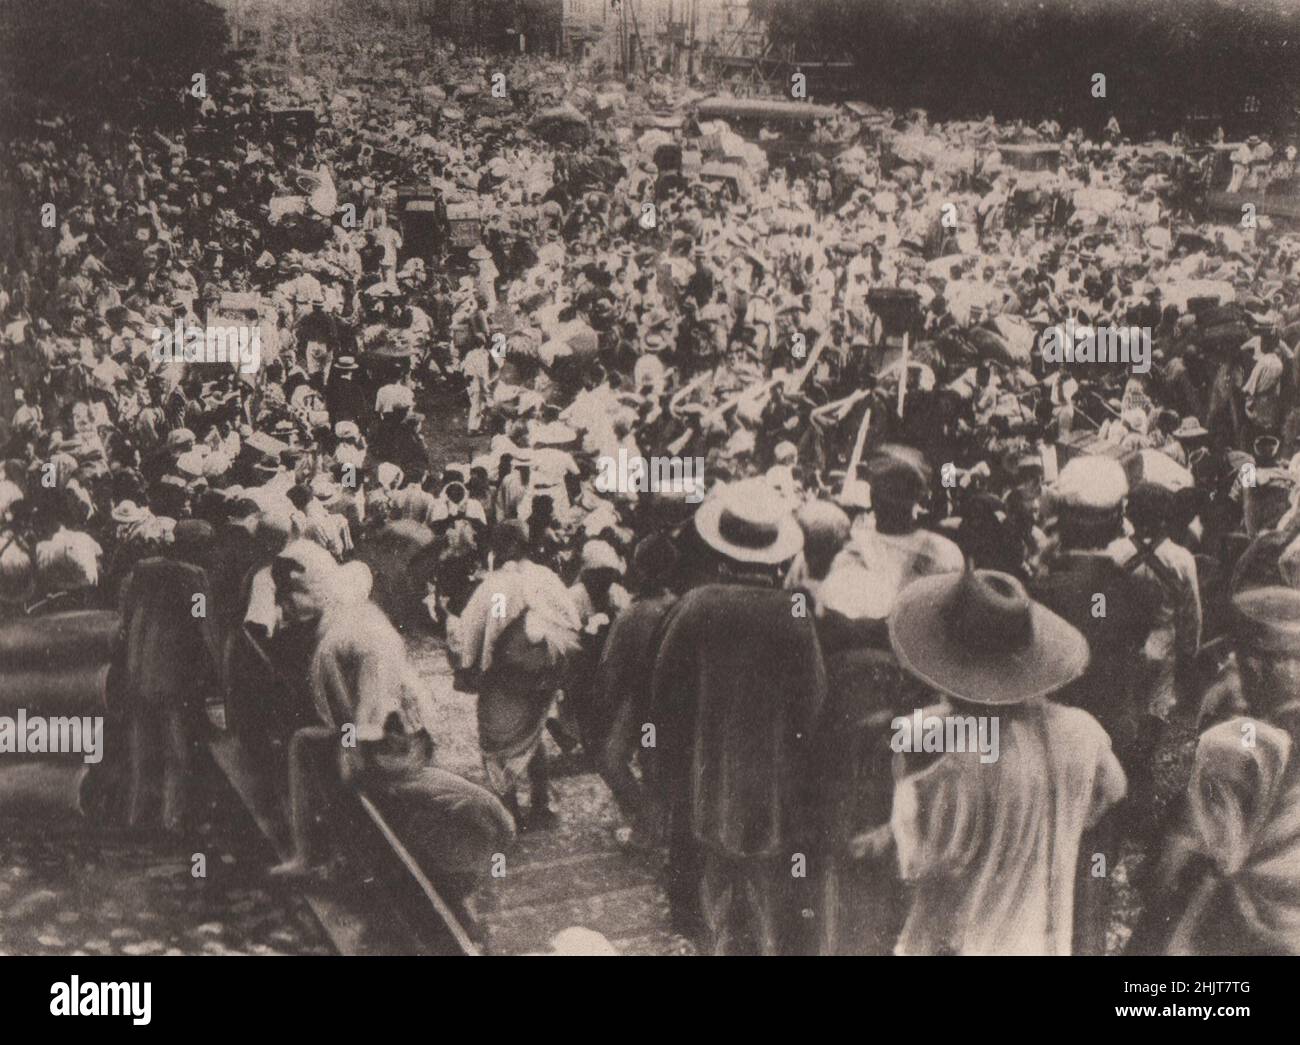 Tremblement de terre 1923 au Japon : des foules de réfugiés fuyant l'arène de l'holocauste, chassés par les flammes furieuses qui se manifestent derrière eux Banque D'Images